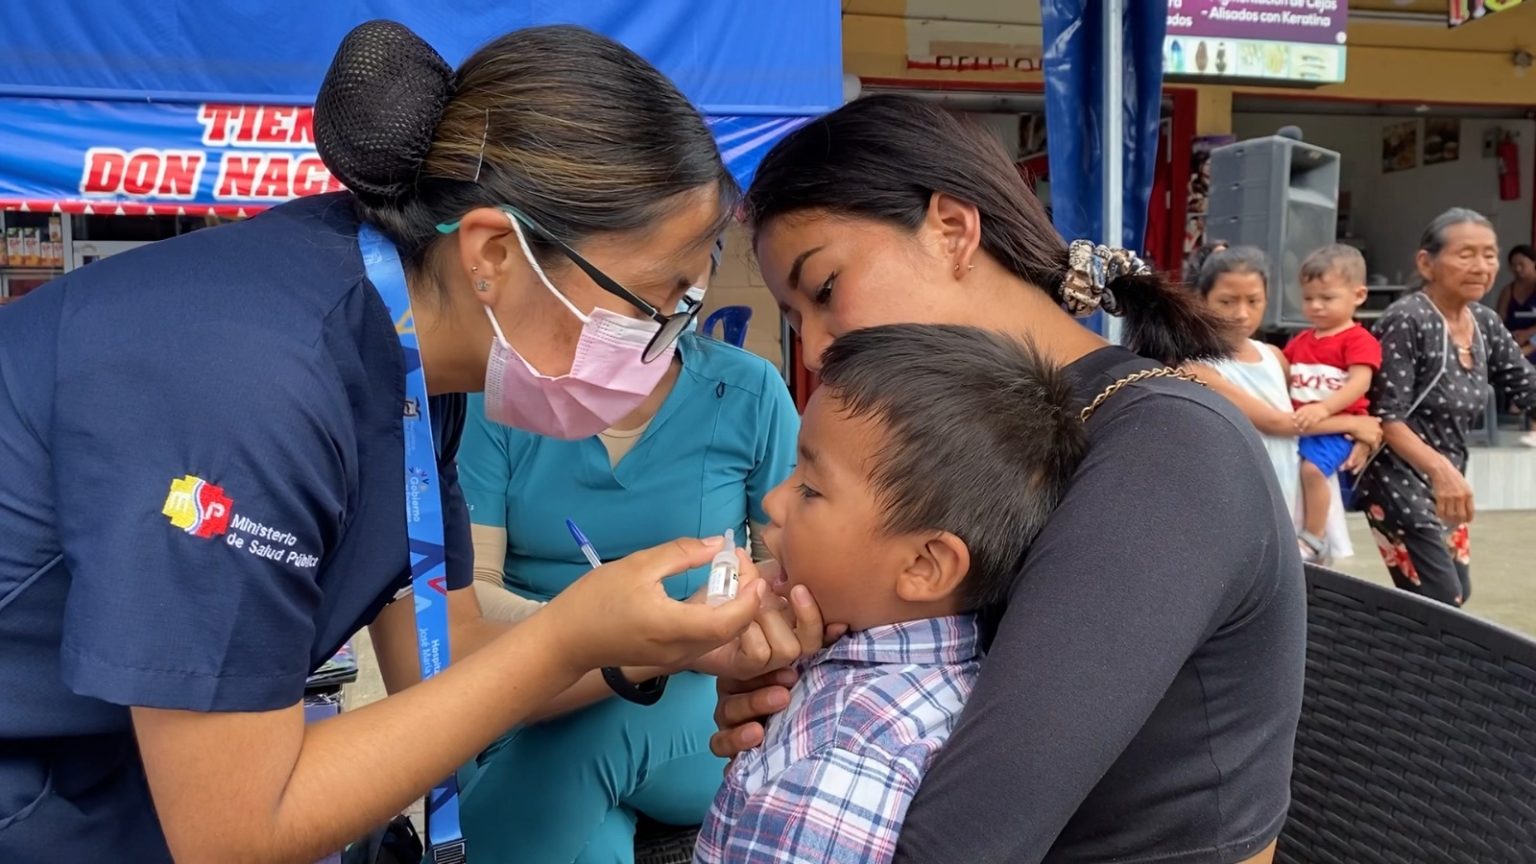 Unicef Ecuador recuerda que la vacunación es gratuita.